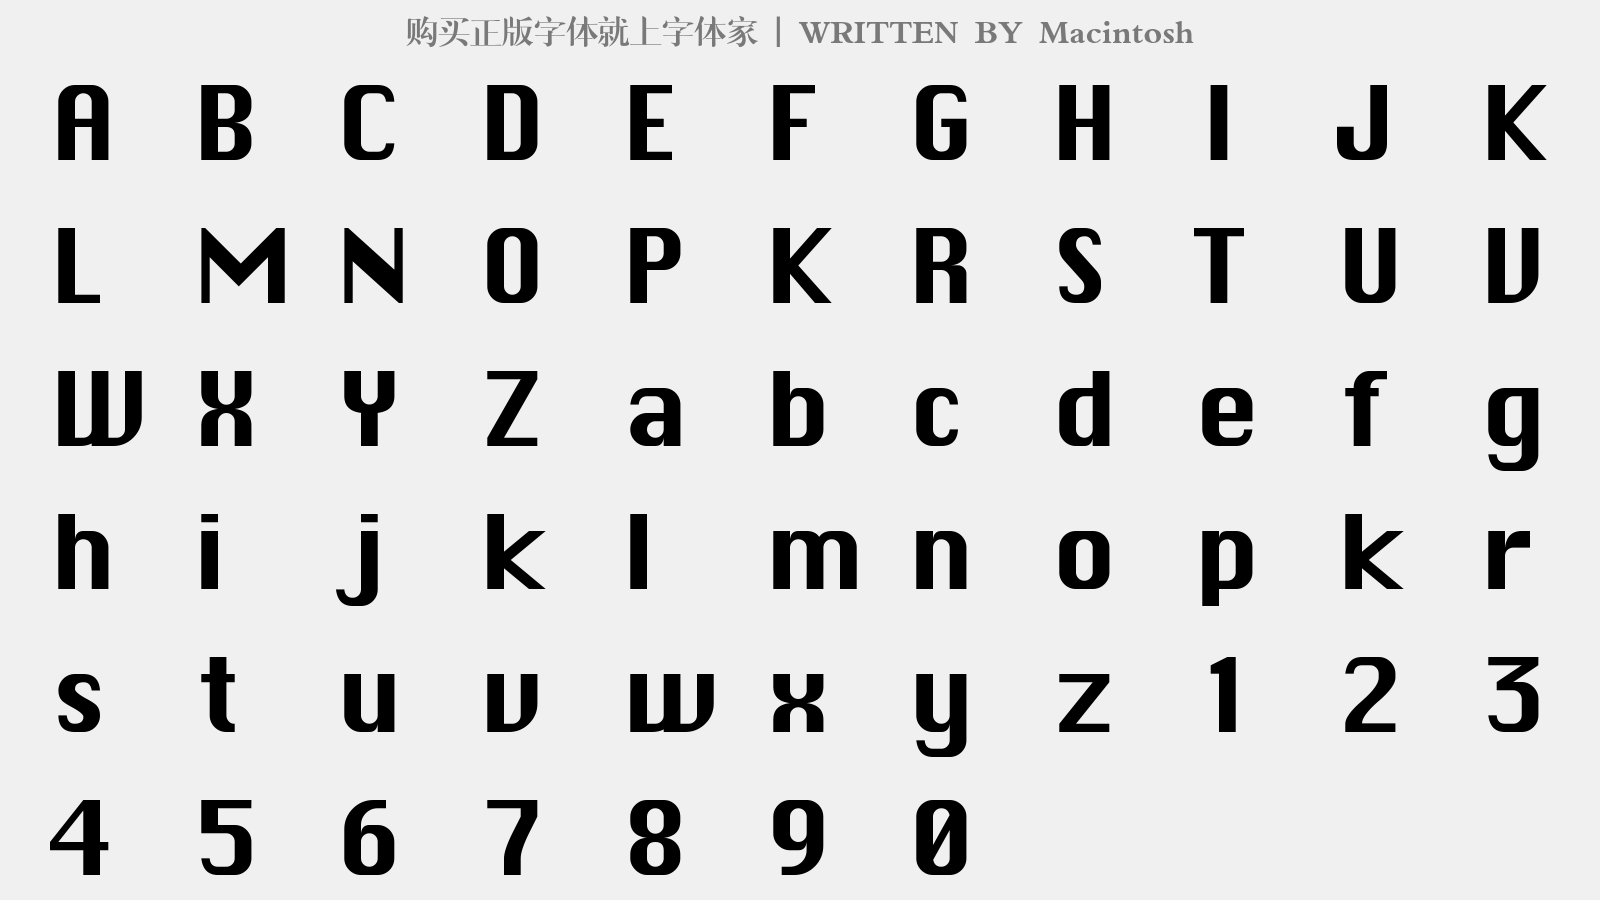 Macintosh - 大写字母/小写字母/数字